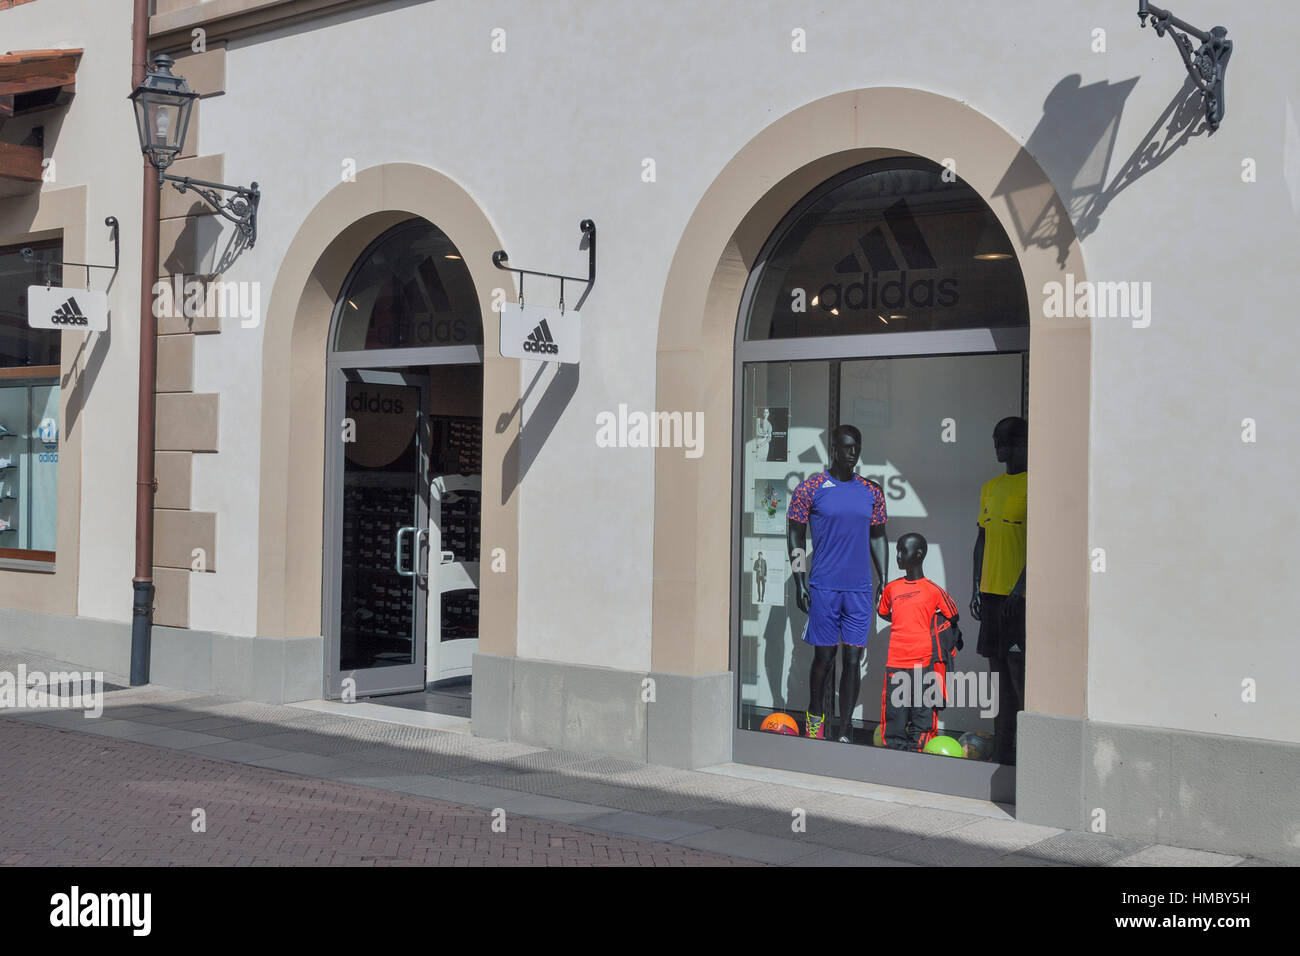 MUGELLO, ITALY - SEPTEMBER 11, 2014: Facade of Adidas store in Stock Photo  - Alamy